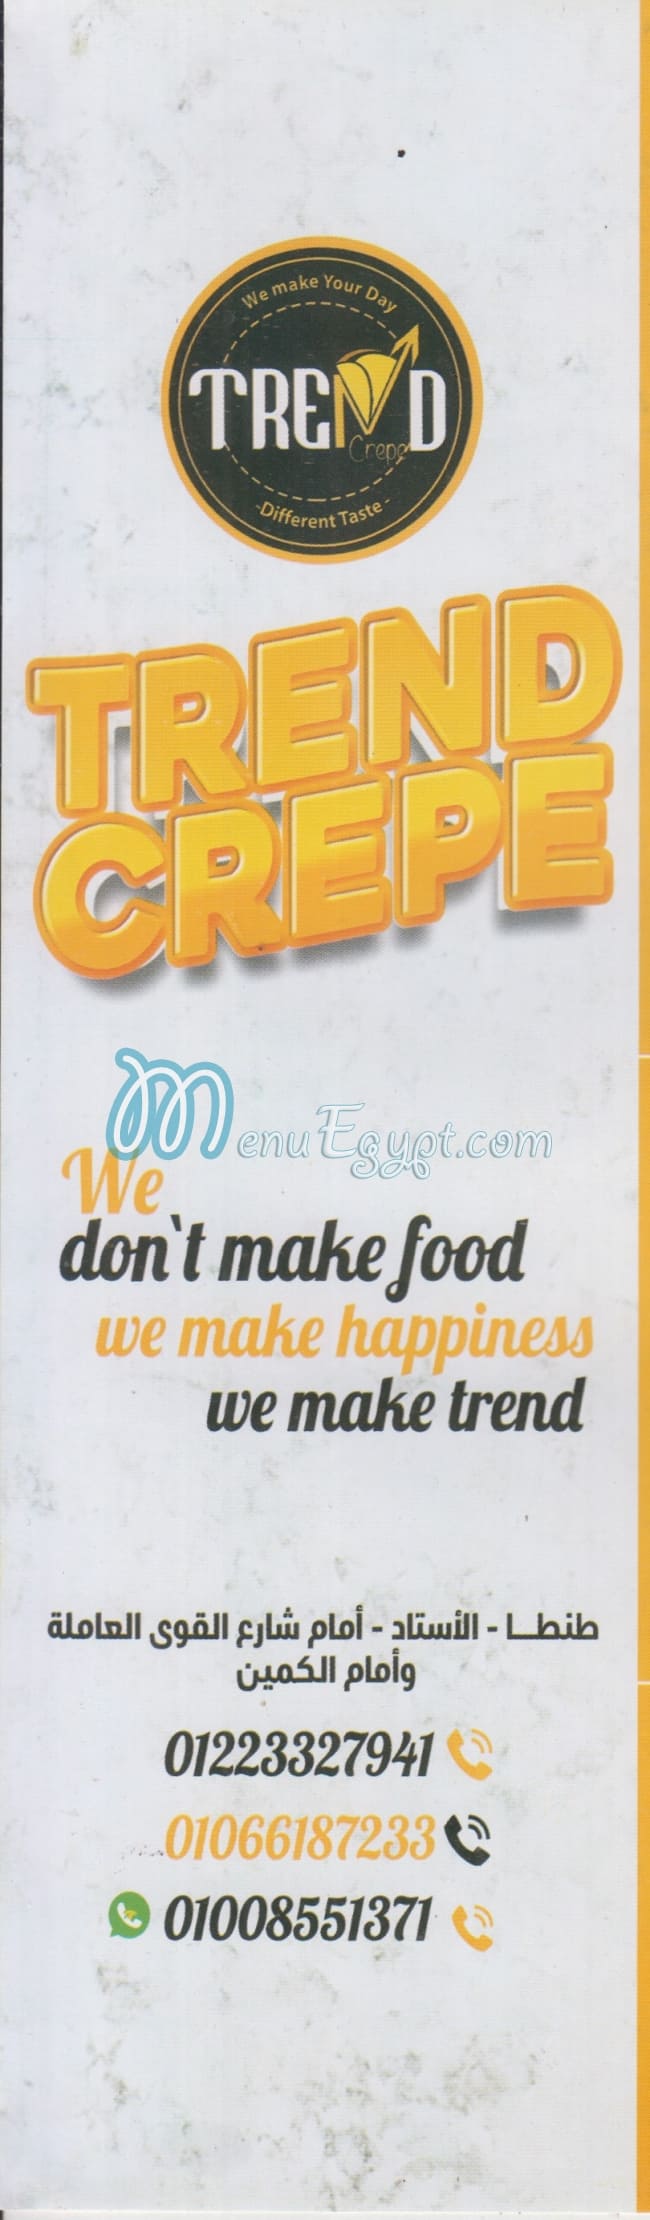 Trend Crepe menu